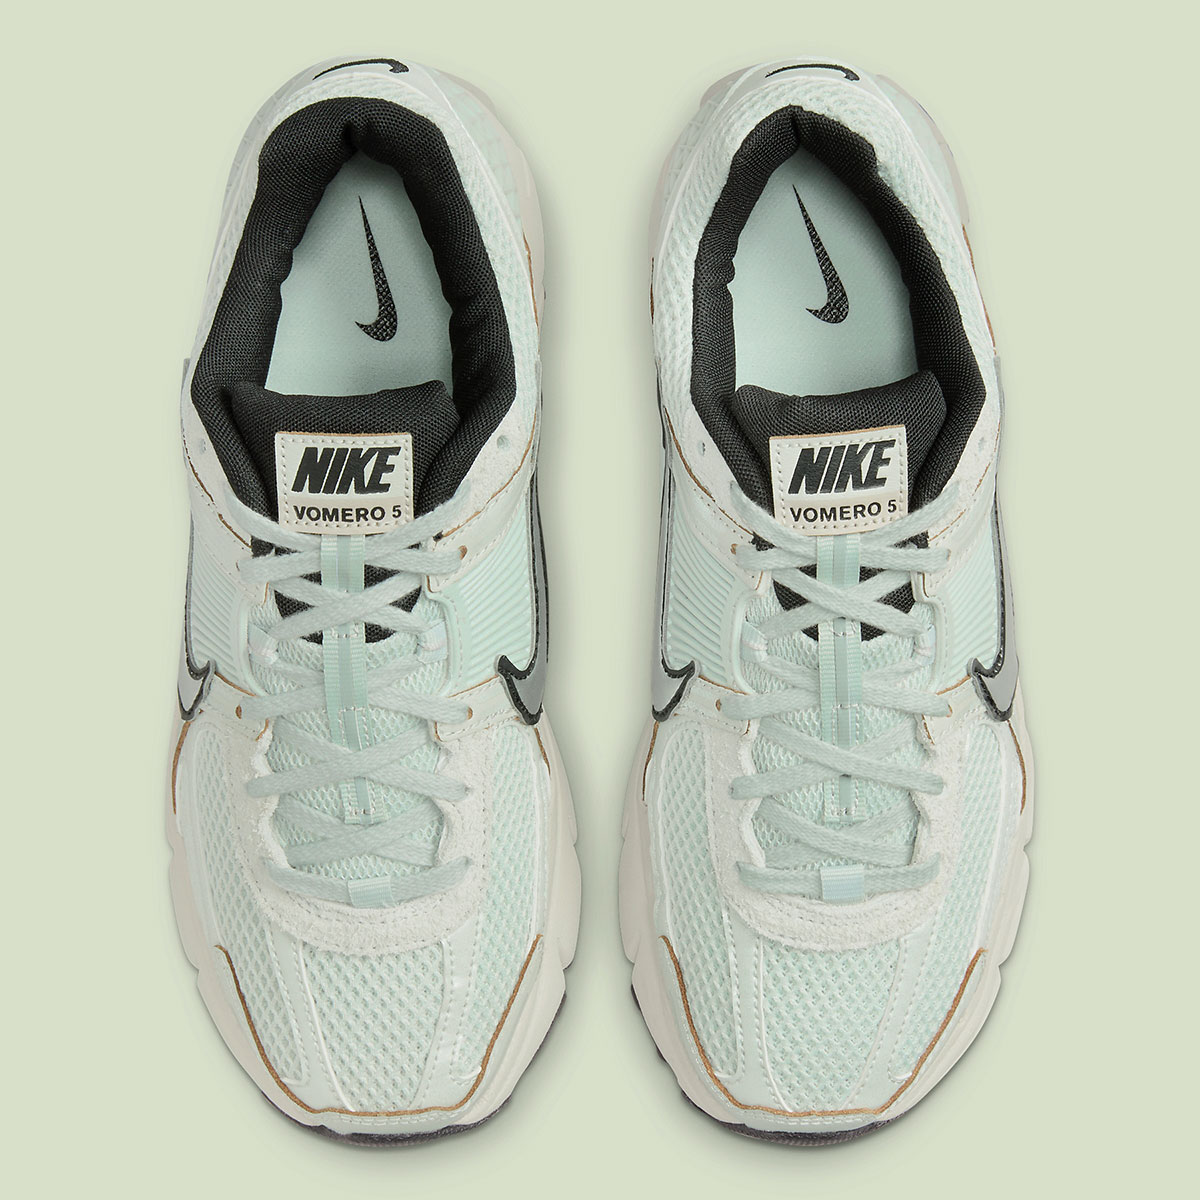 Nike Nike IinternationaReimagined LTR PRM 705279-002 Light Silver Chrome Light Bone Black Fn6742 001 2